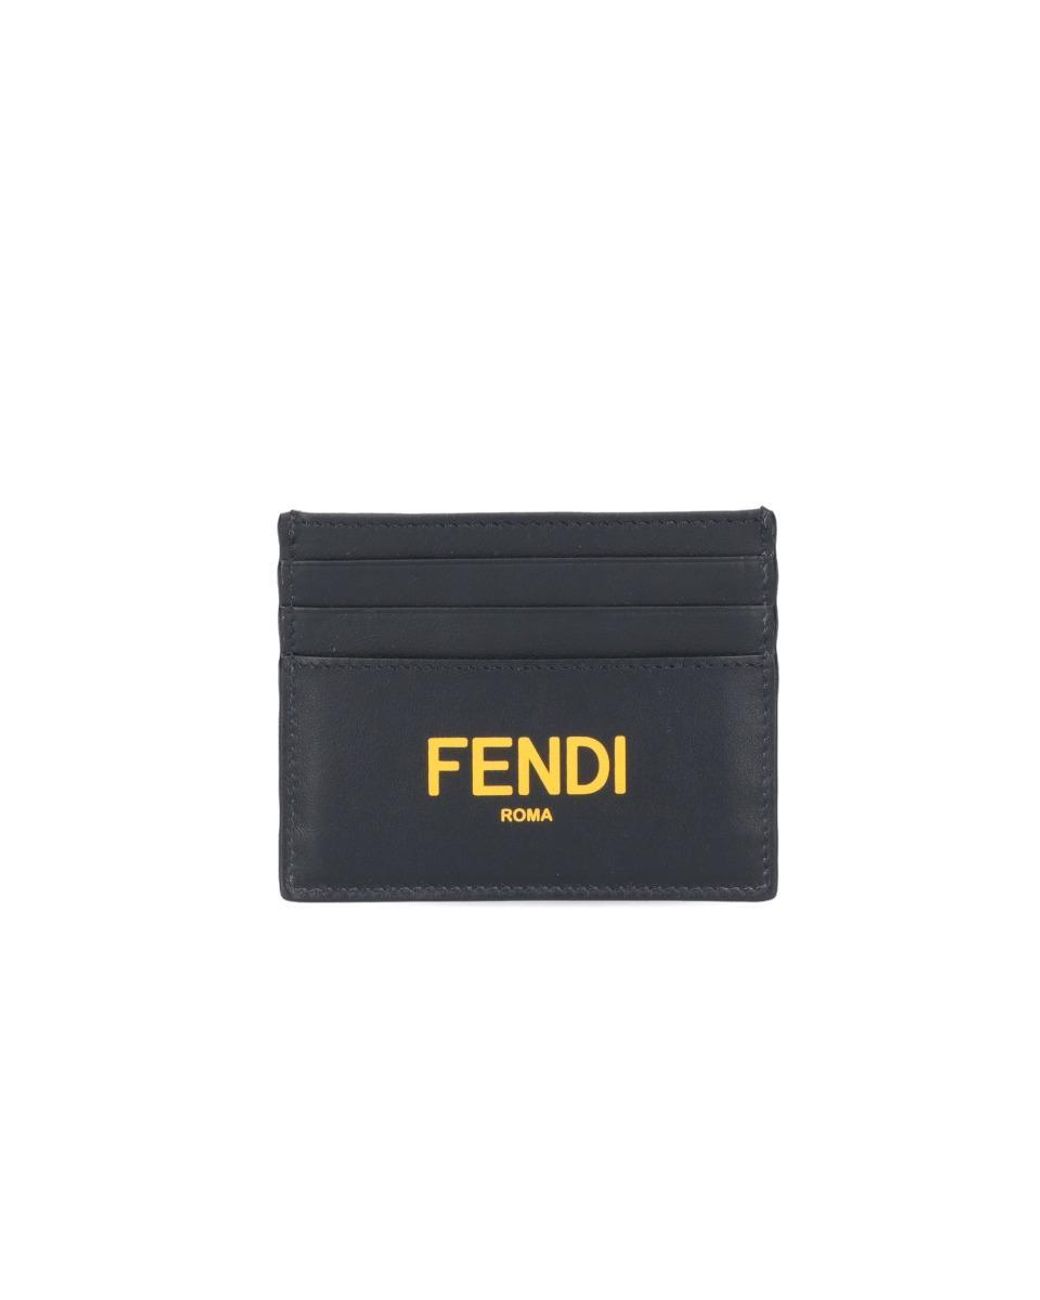 Fendi Leather Roma Print Card Holder in Black for Men - Lyst